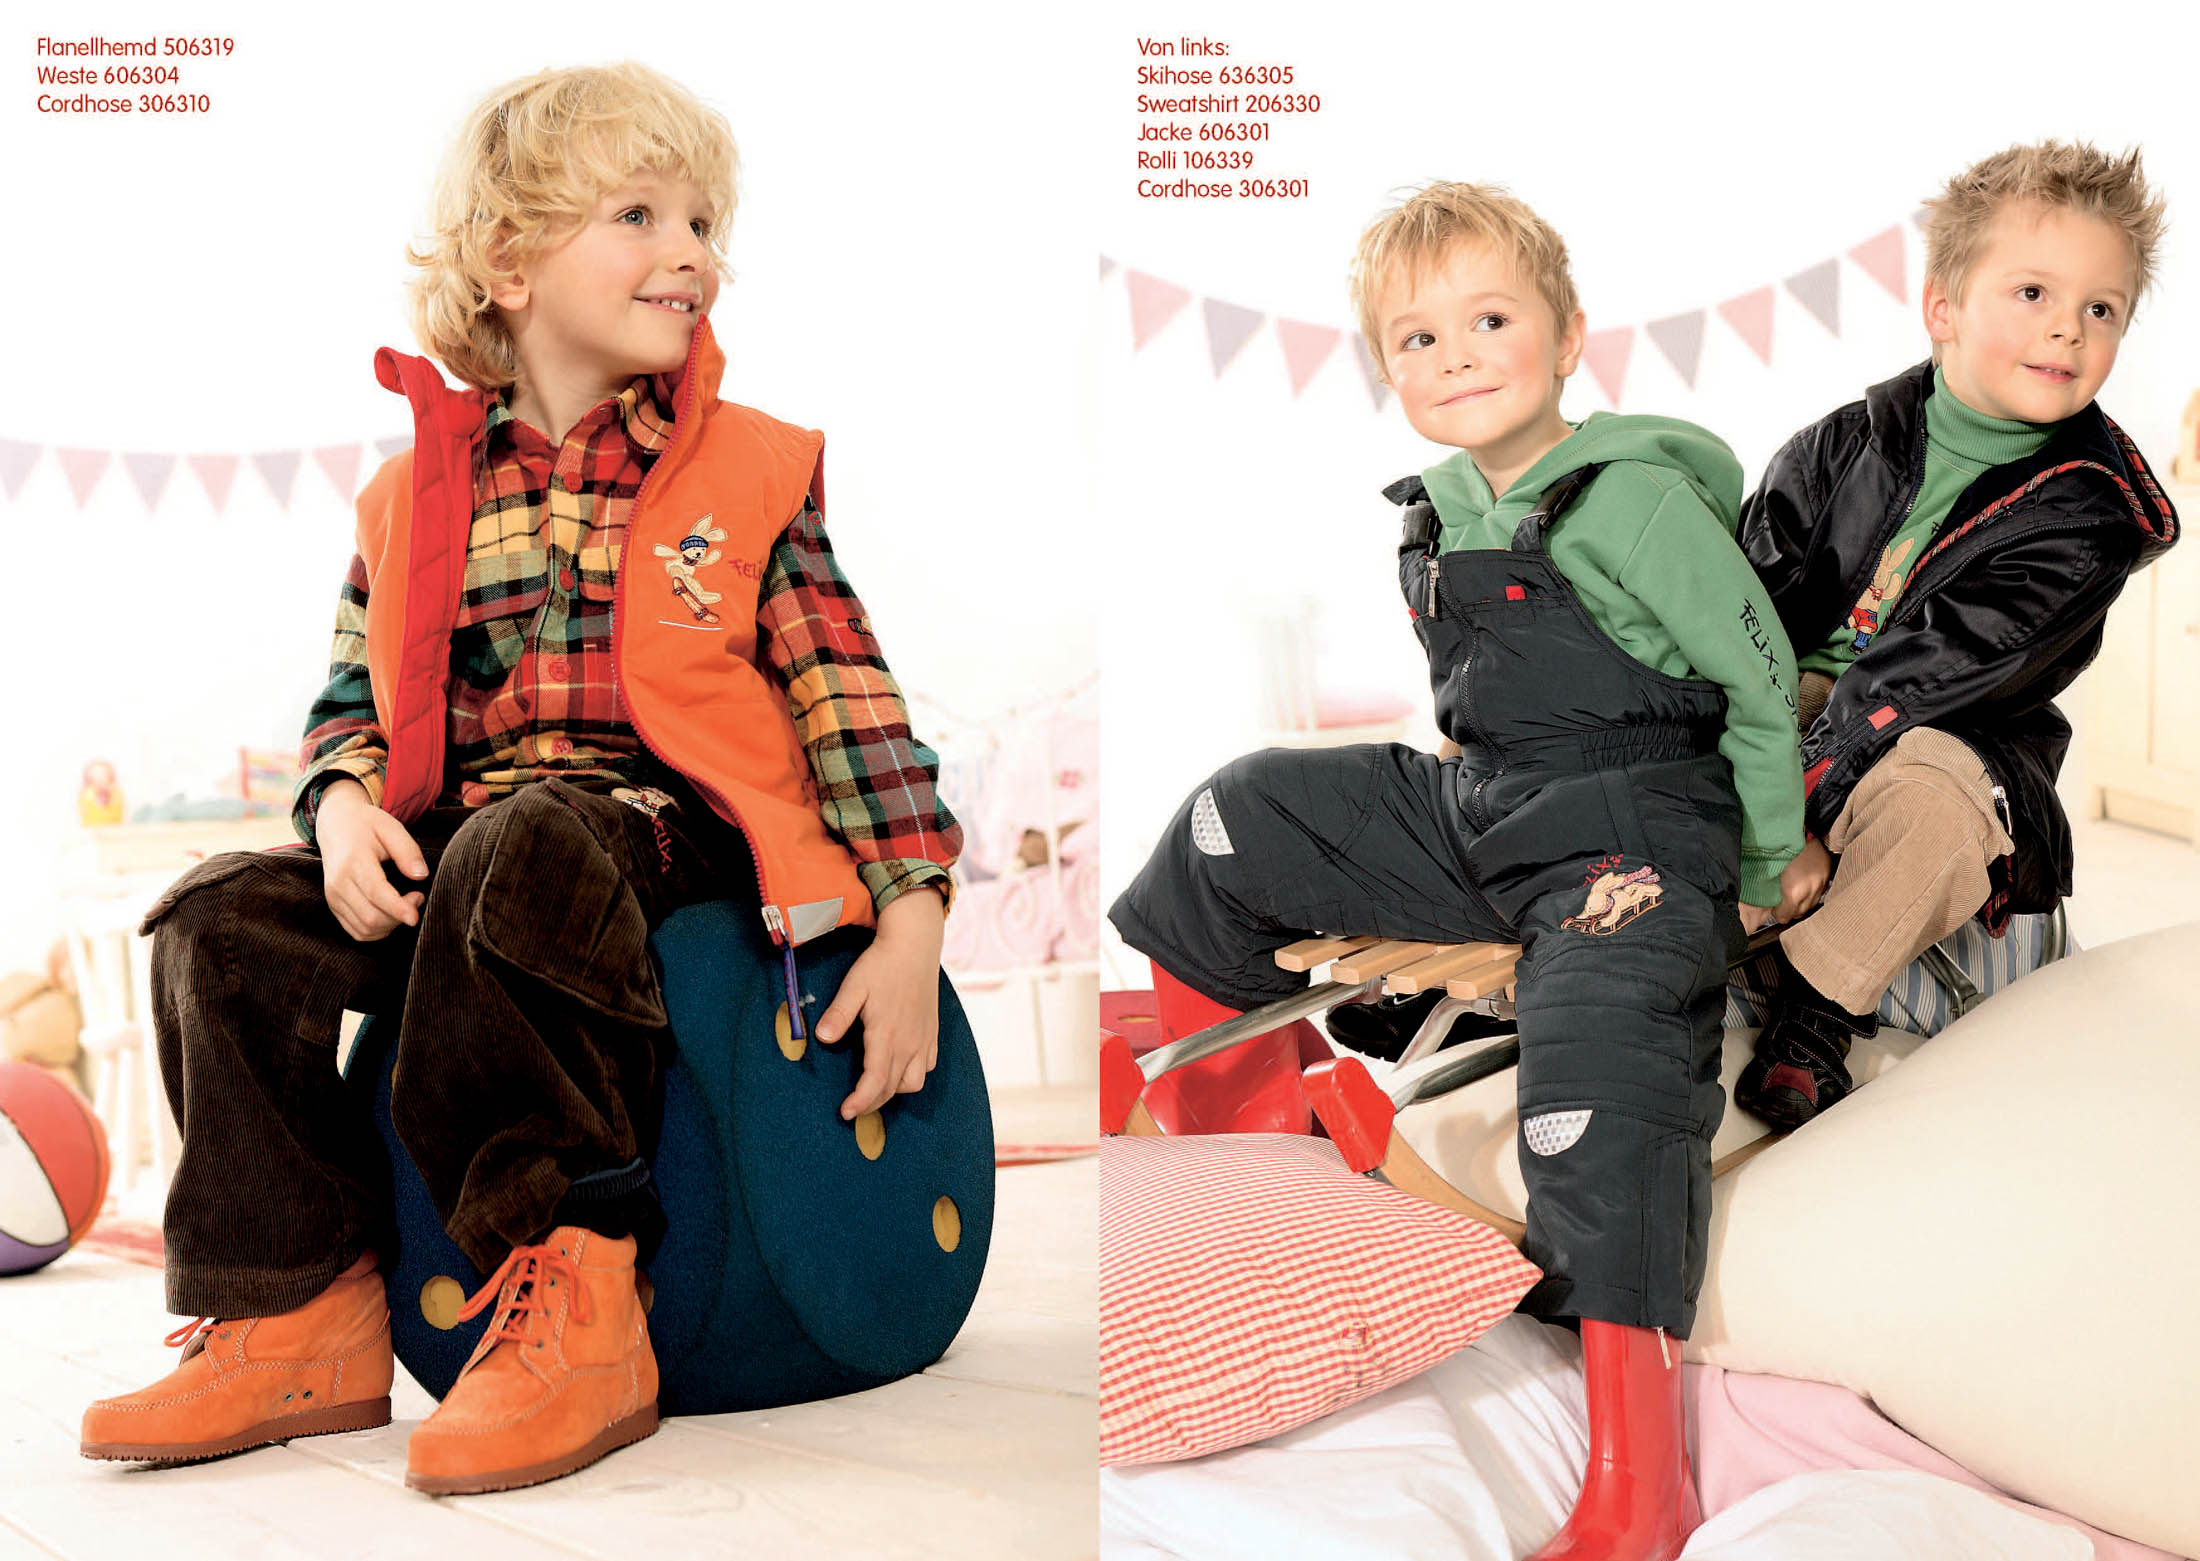 Felix, Modekatalog Zwei junge Jungen posieren verspielt in stylischen Outfits. Der erste Junge sitzt auf einer orangefarbenen Reisetasche und lächelt breit. Das zweite Bild zeigt beide Jungen auf einer Holzwippe, der zweite Junge grinst und hat verschränkte Arme. © Fotografie Tomas Rodriguez